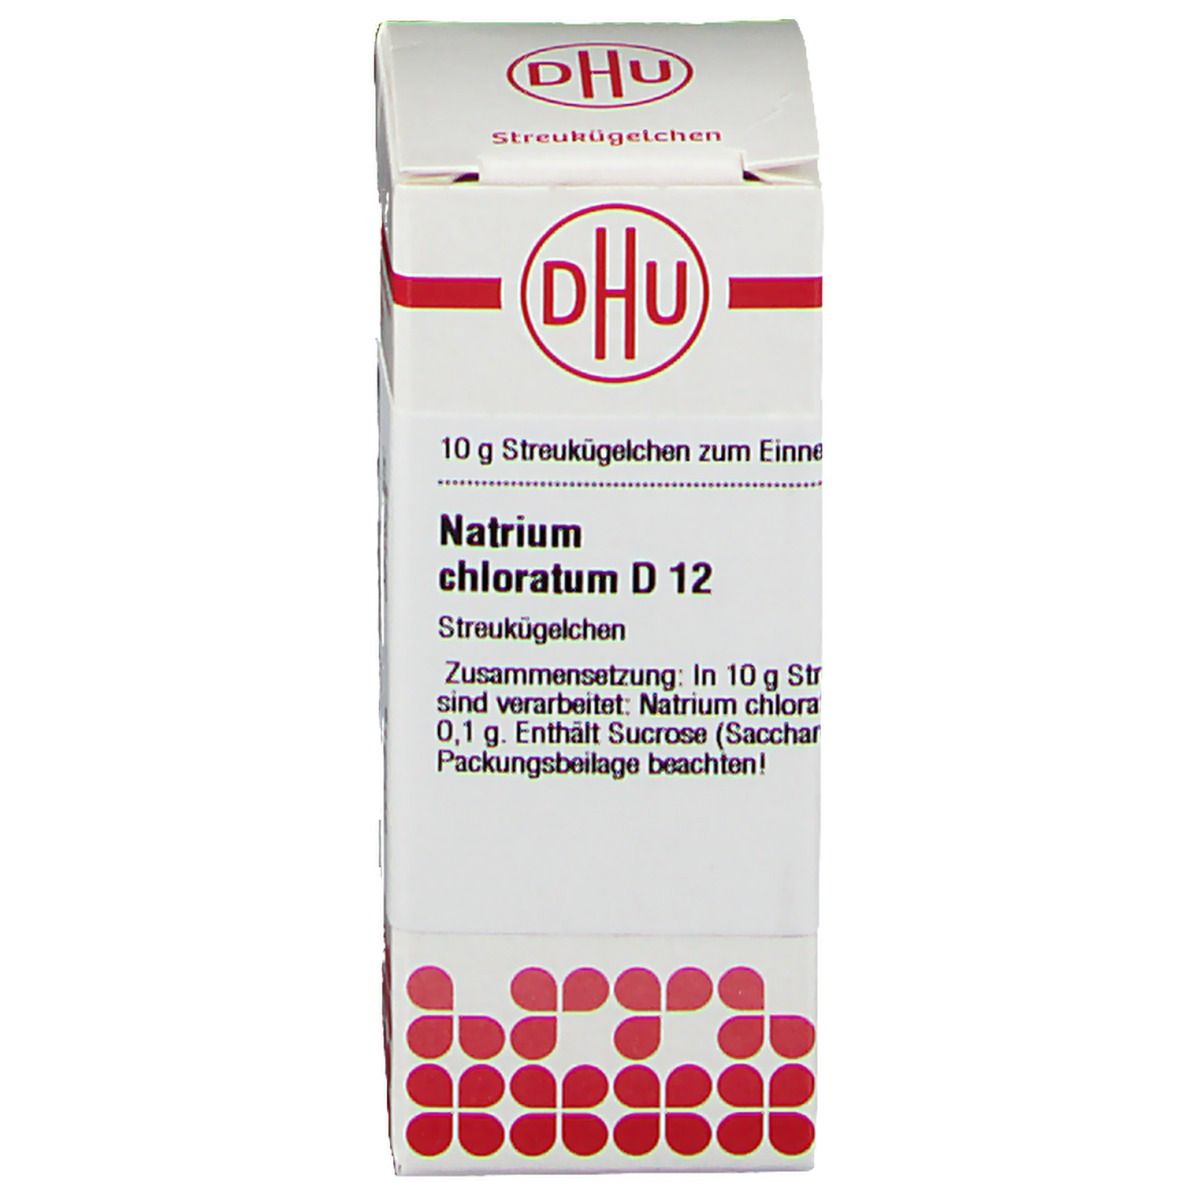 DHU Natrium Chloratum D12